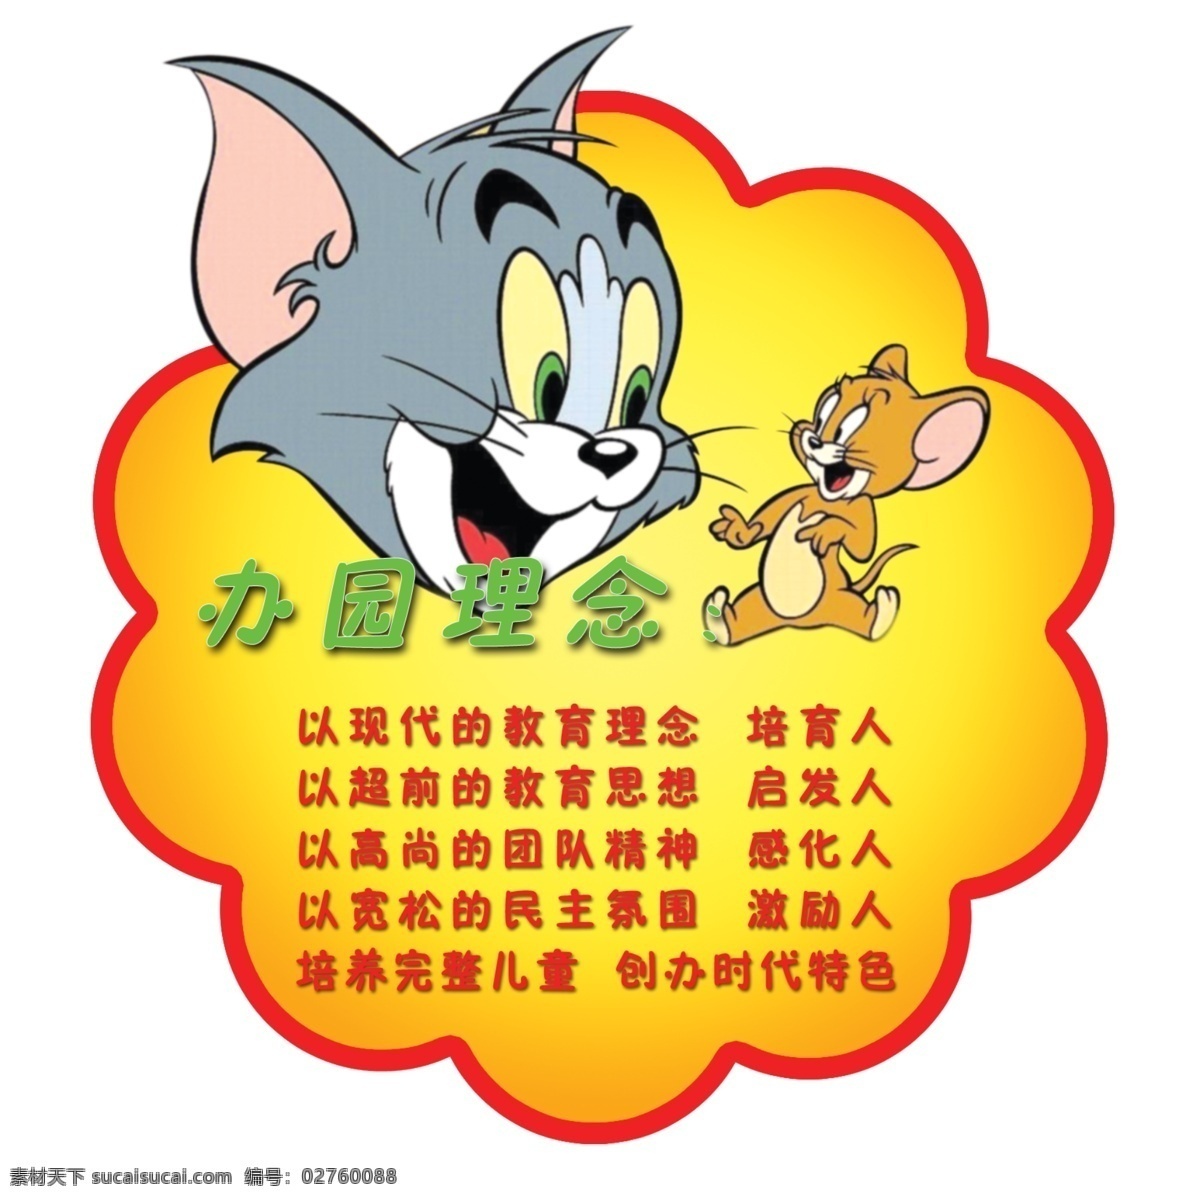 幼儿园展板 猫和老鼠 办园理念 异形展板 展板模板 广告设计模板 源文件